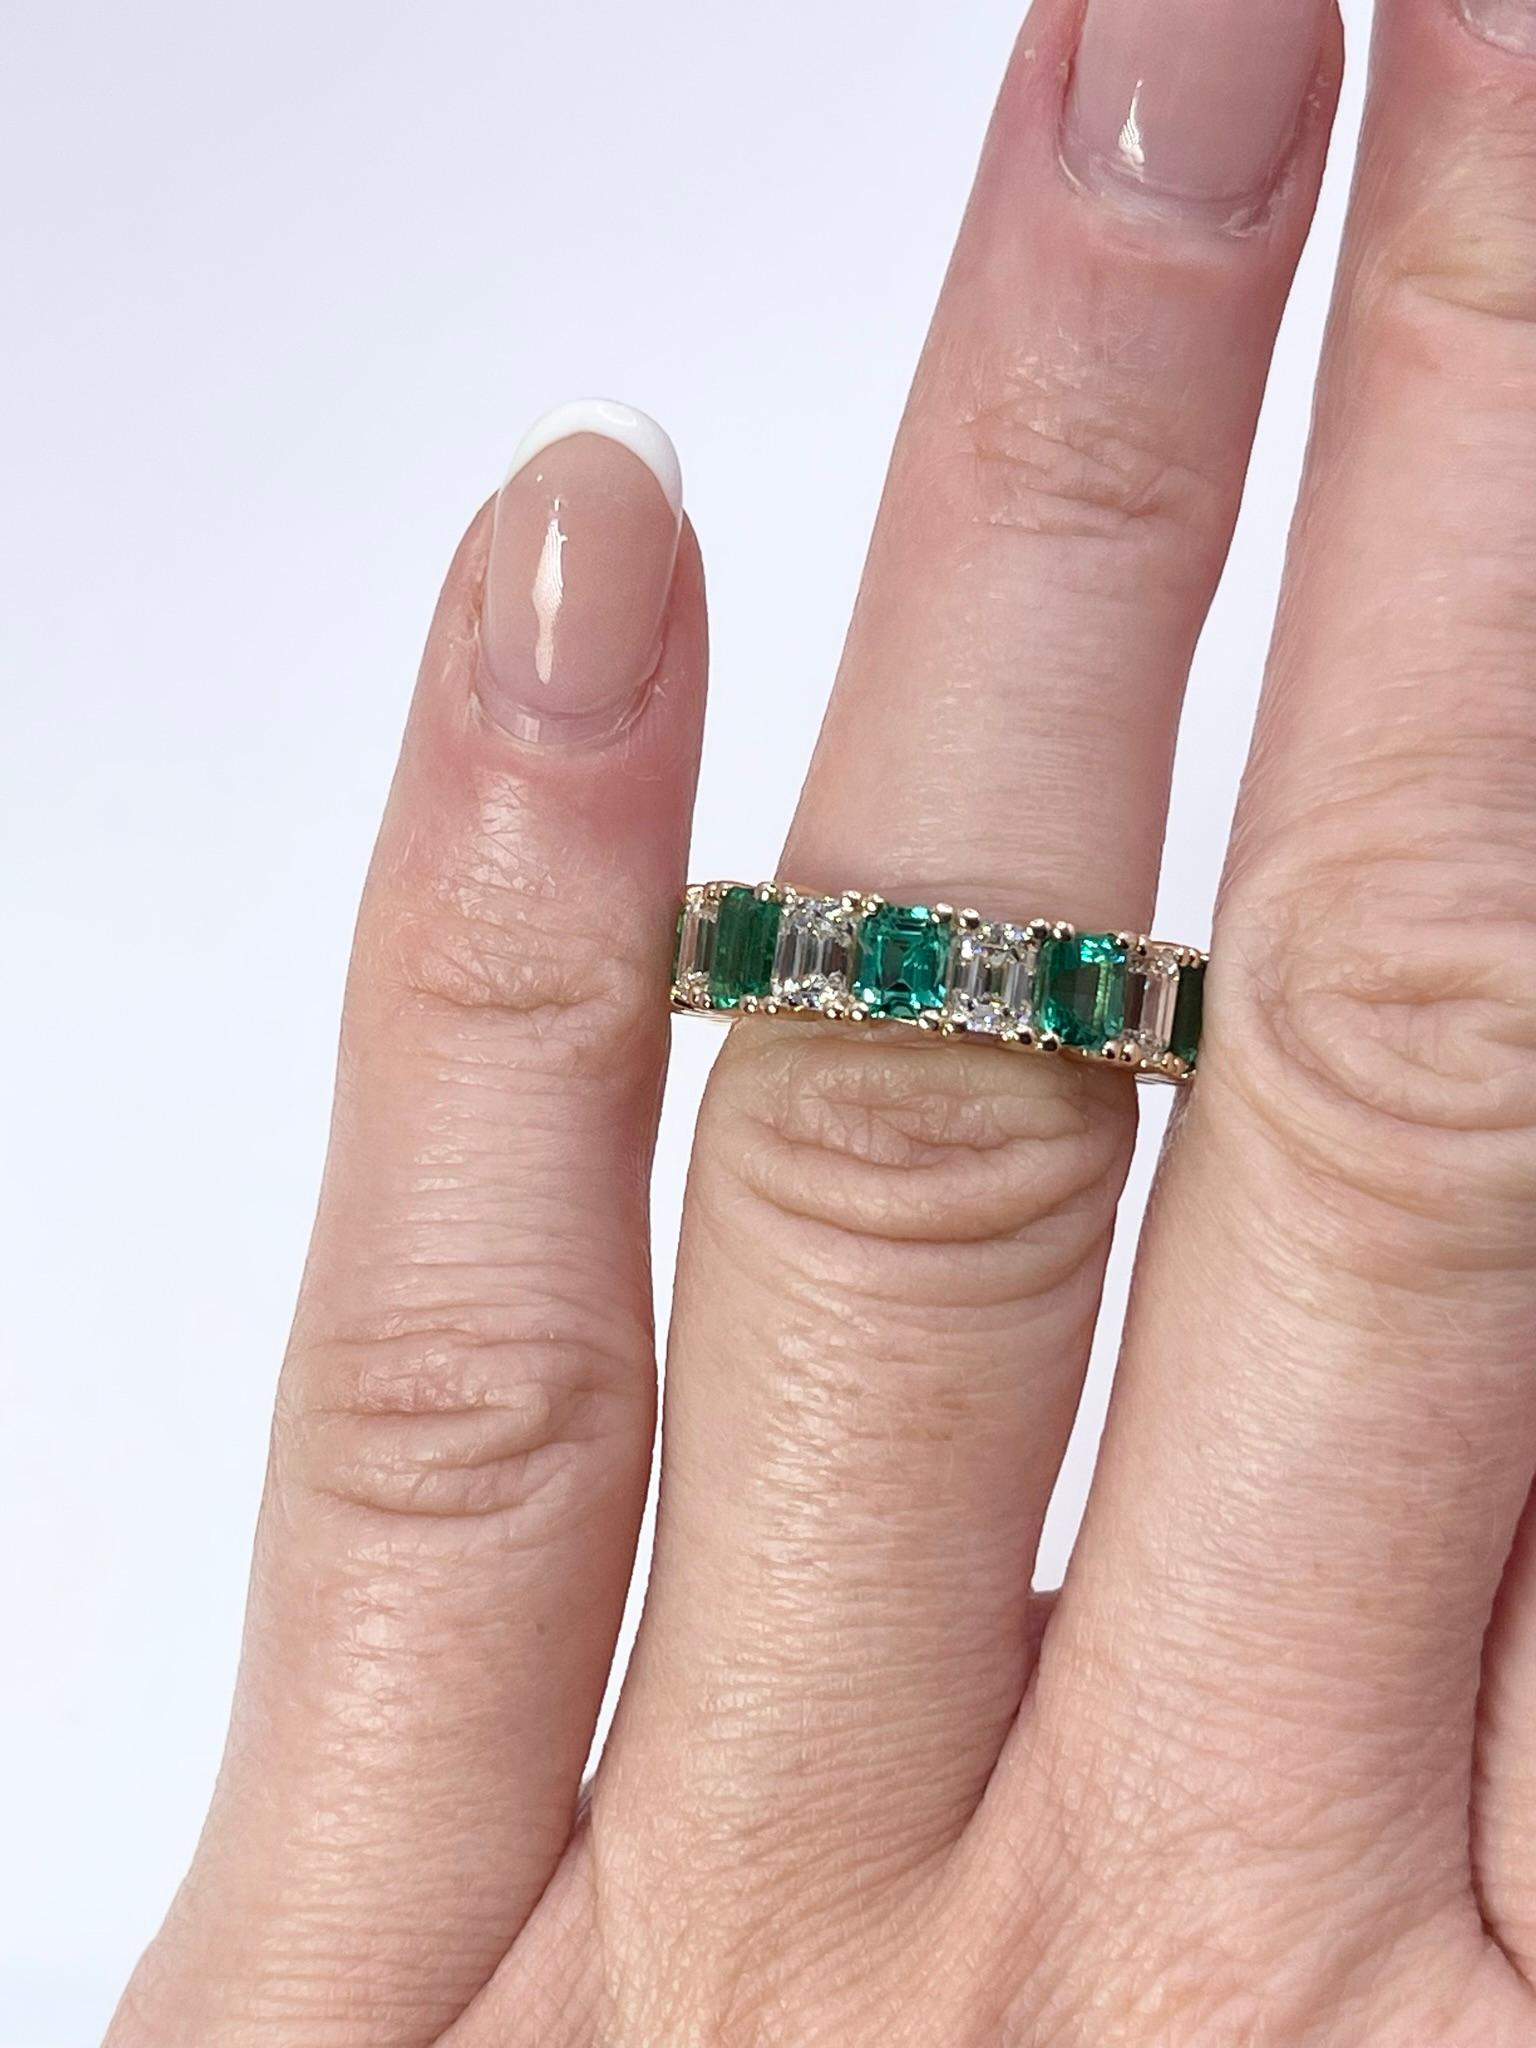 Seltene Kombination zu finden! Dieser unglaubliche Ring mit grünem Smaragd und Diamanten in Größe 6 wird Sie in Erstaunen versetzen, so eine schöne Anordnung von grünen und regenbogenfarbenen Sprenkeln!
Der Ring ist mit ca. 2,5 Karat Diamanten und 4